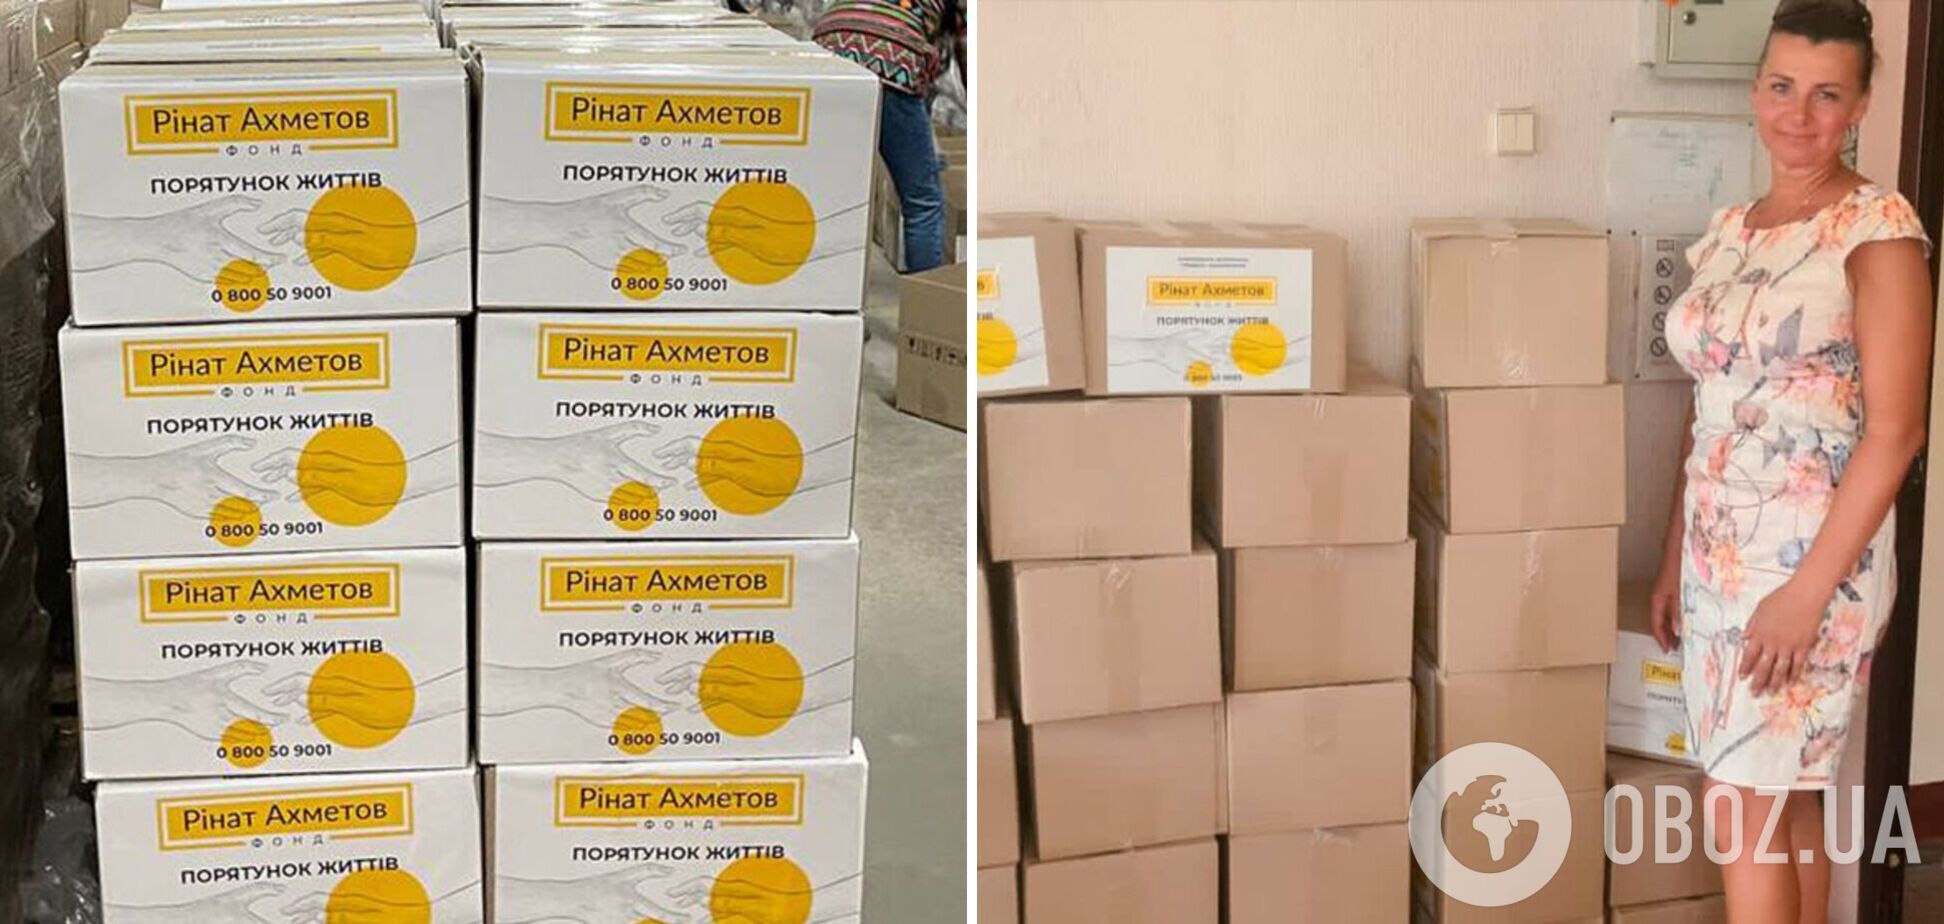 Фонд Рината Ахметова передал 3600 продуктовых наборов в Донецкую область